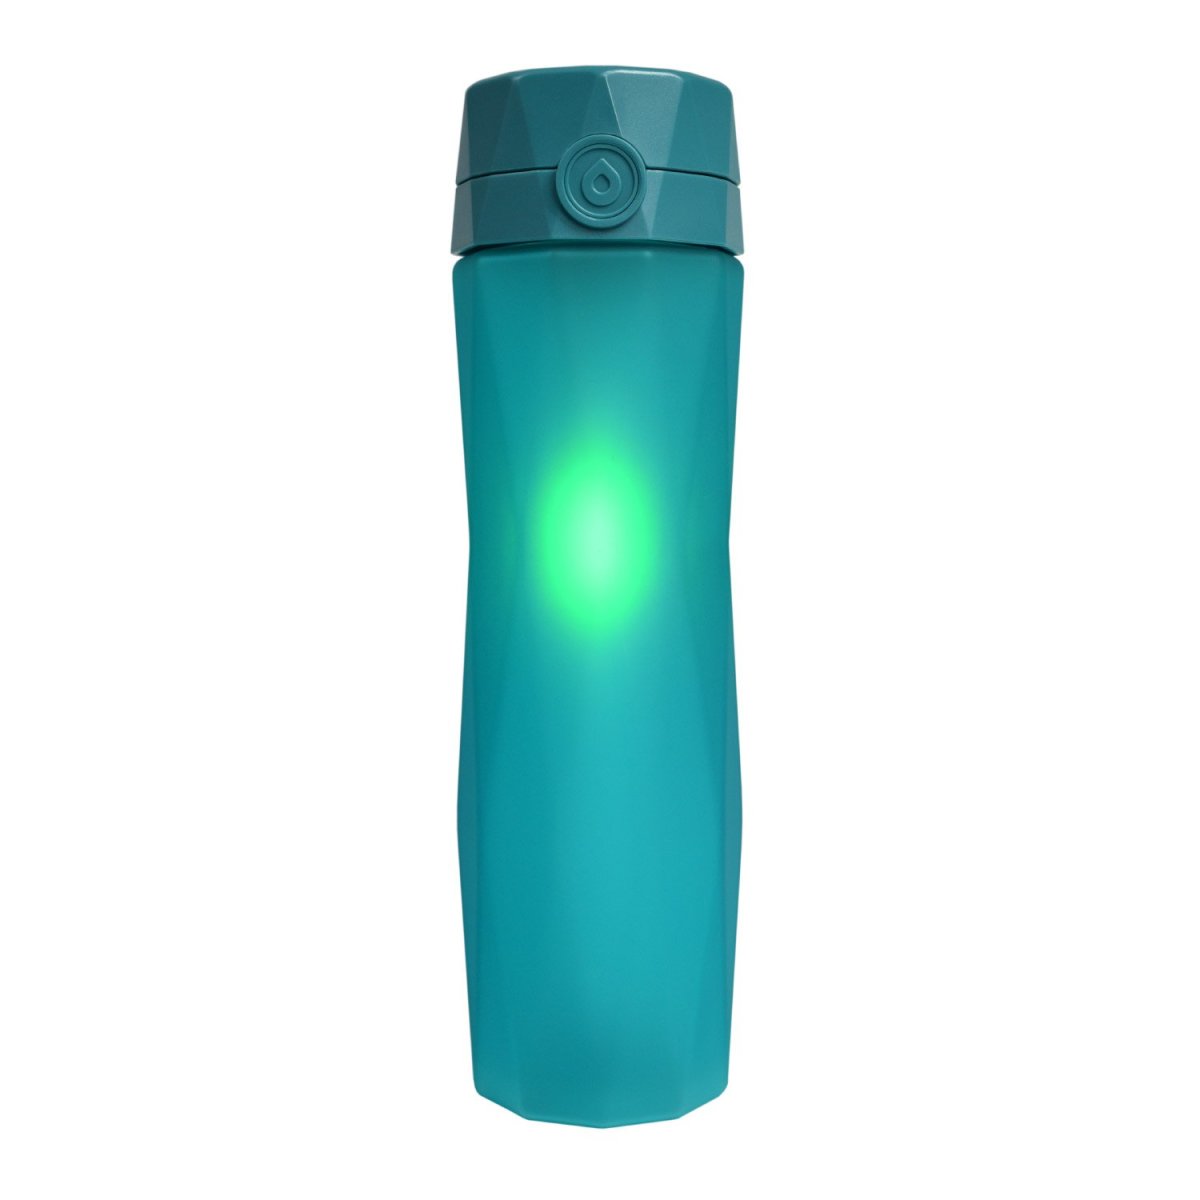 Hidrate Spark 2.0 smart water bottle